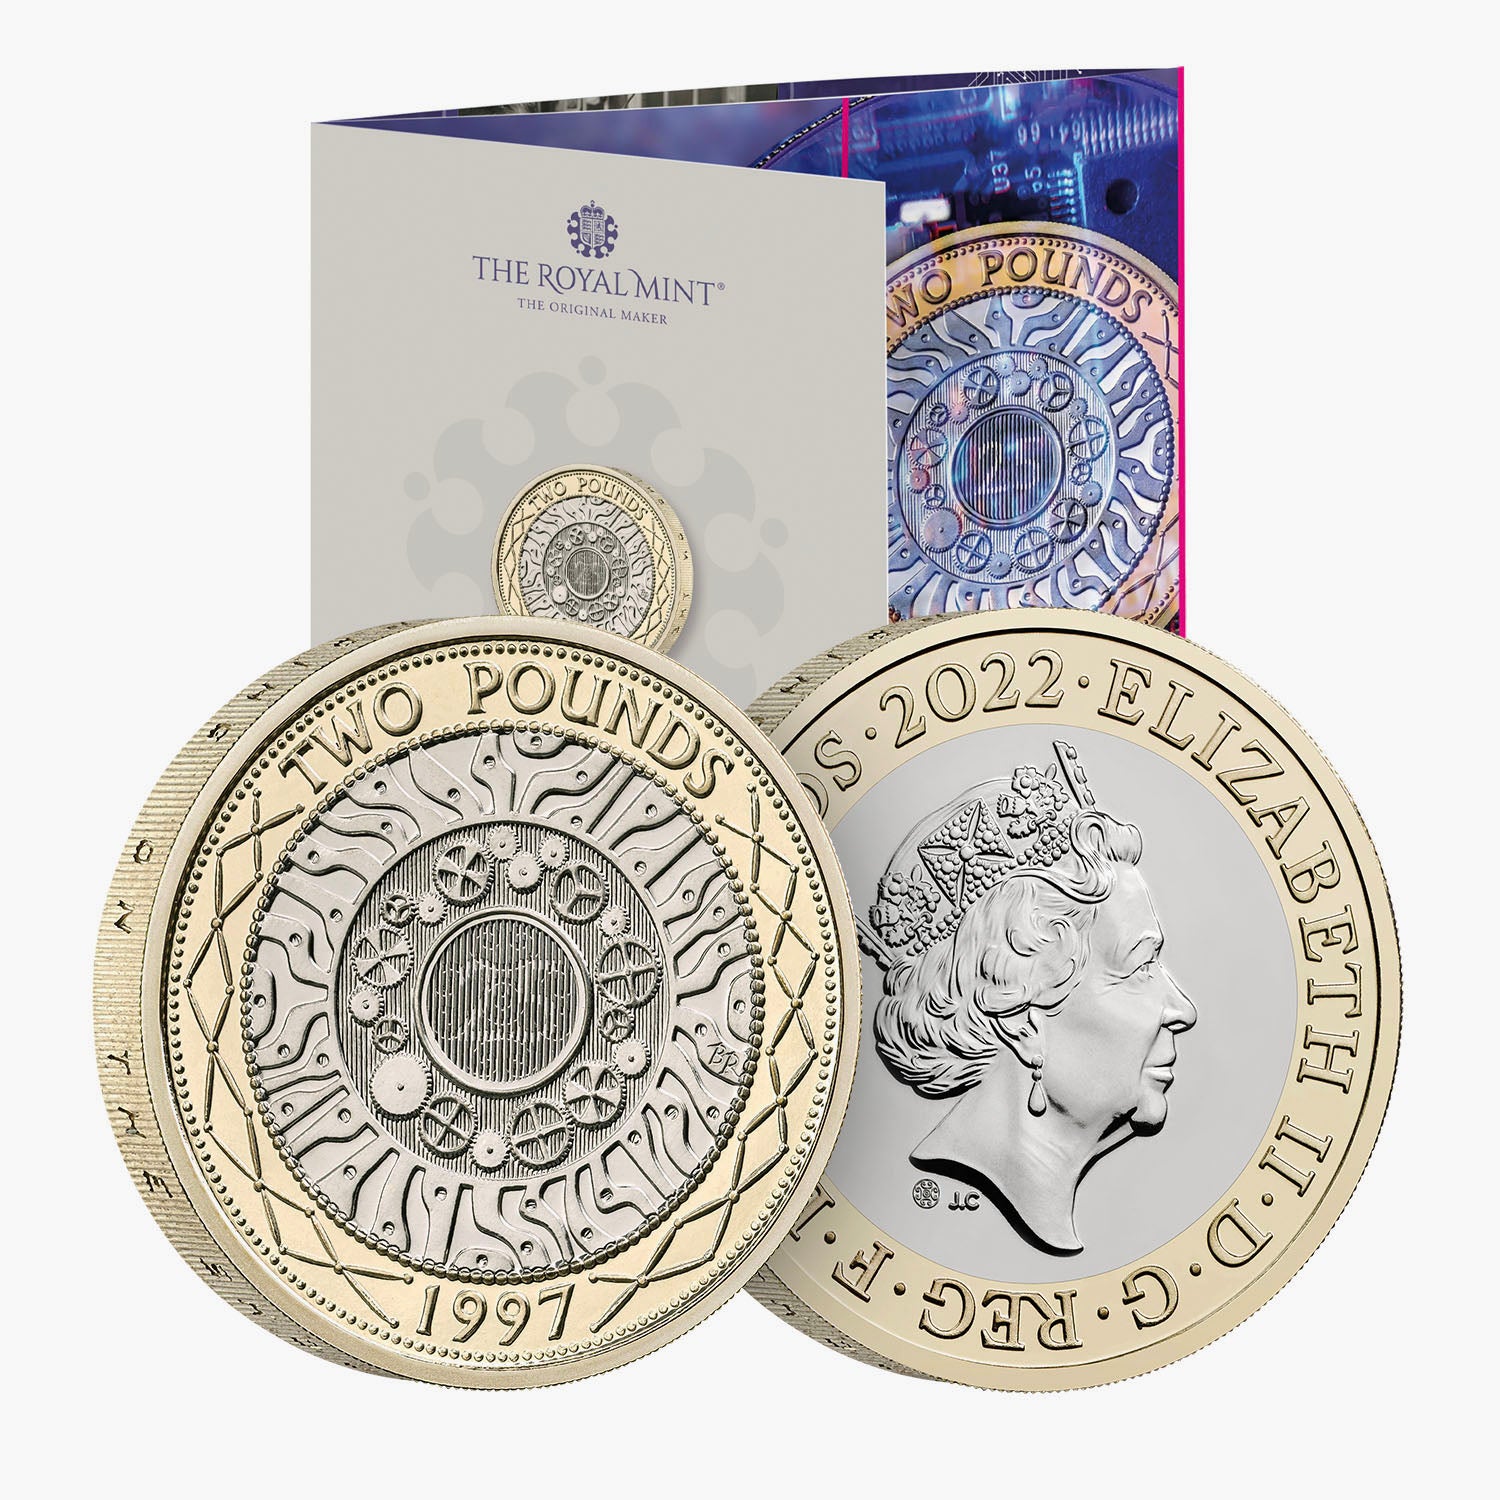 2022 英国ポンド 2 ブリリアント未流通コインの 25 周年を祝う